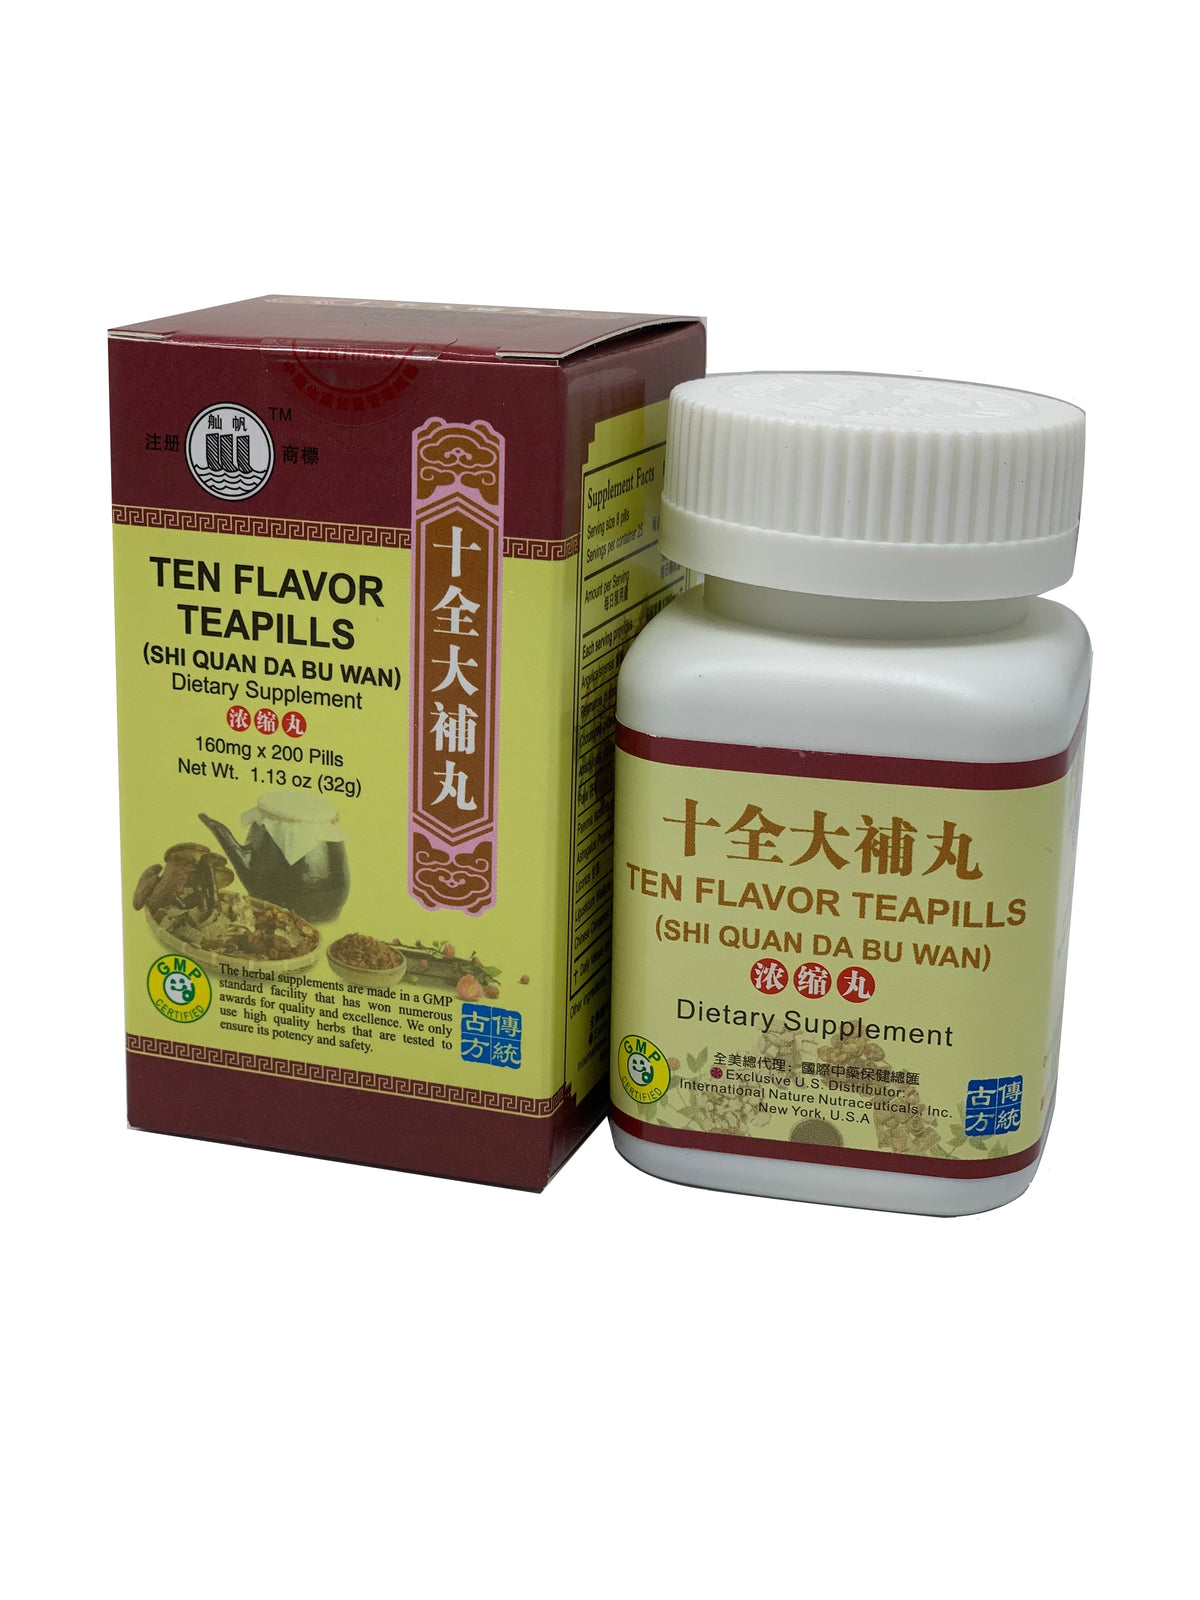 Ten Flavor Teapills (Shi Quan Da Bu Wan)